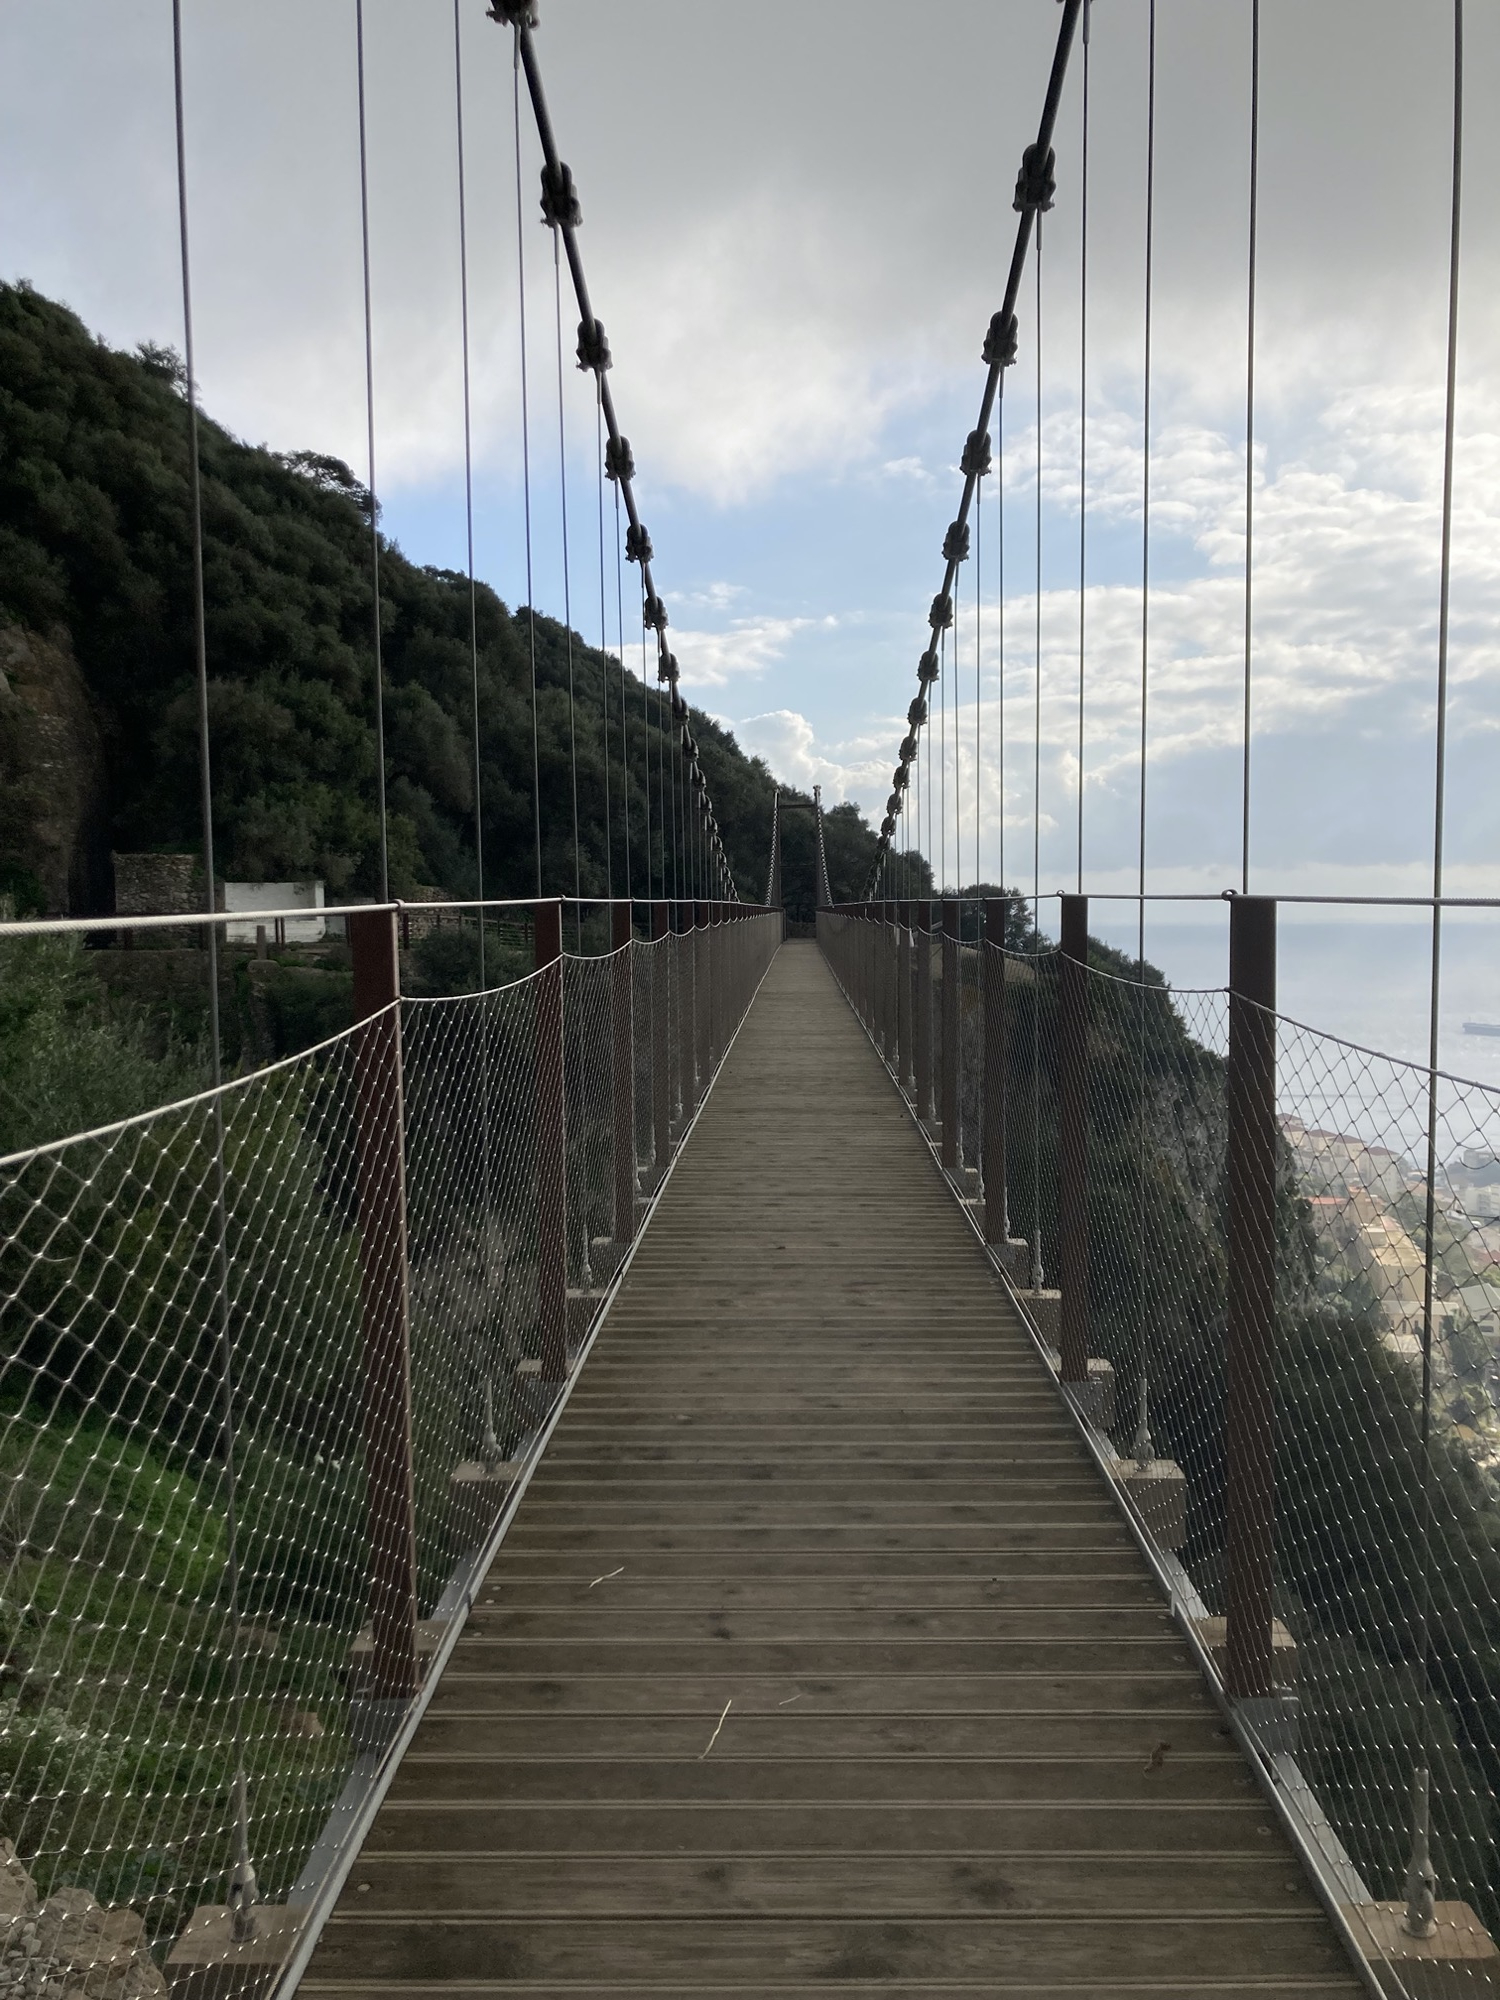 Blick auf die Hängebrücke, die Brücke scheint sich auf dem Foto nahezu ins Unendliche zu entfalten, links der baumbewachsene Felsen von Gibraltar, rechts im Hintergrund das Meer unten in der Bucht